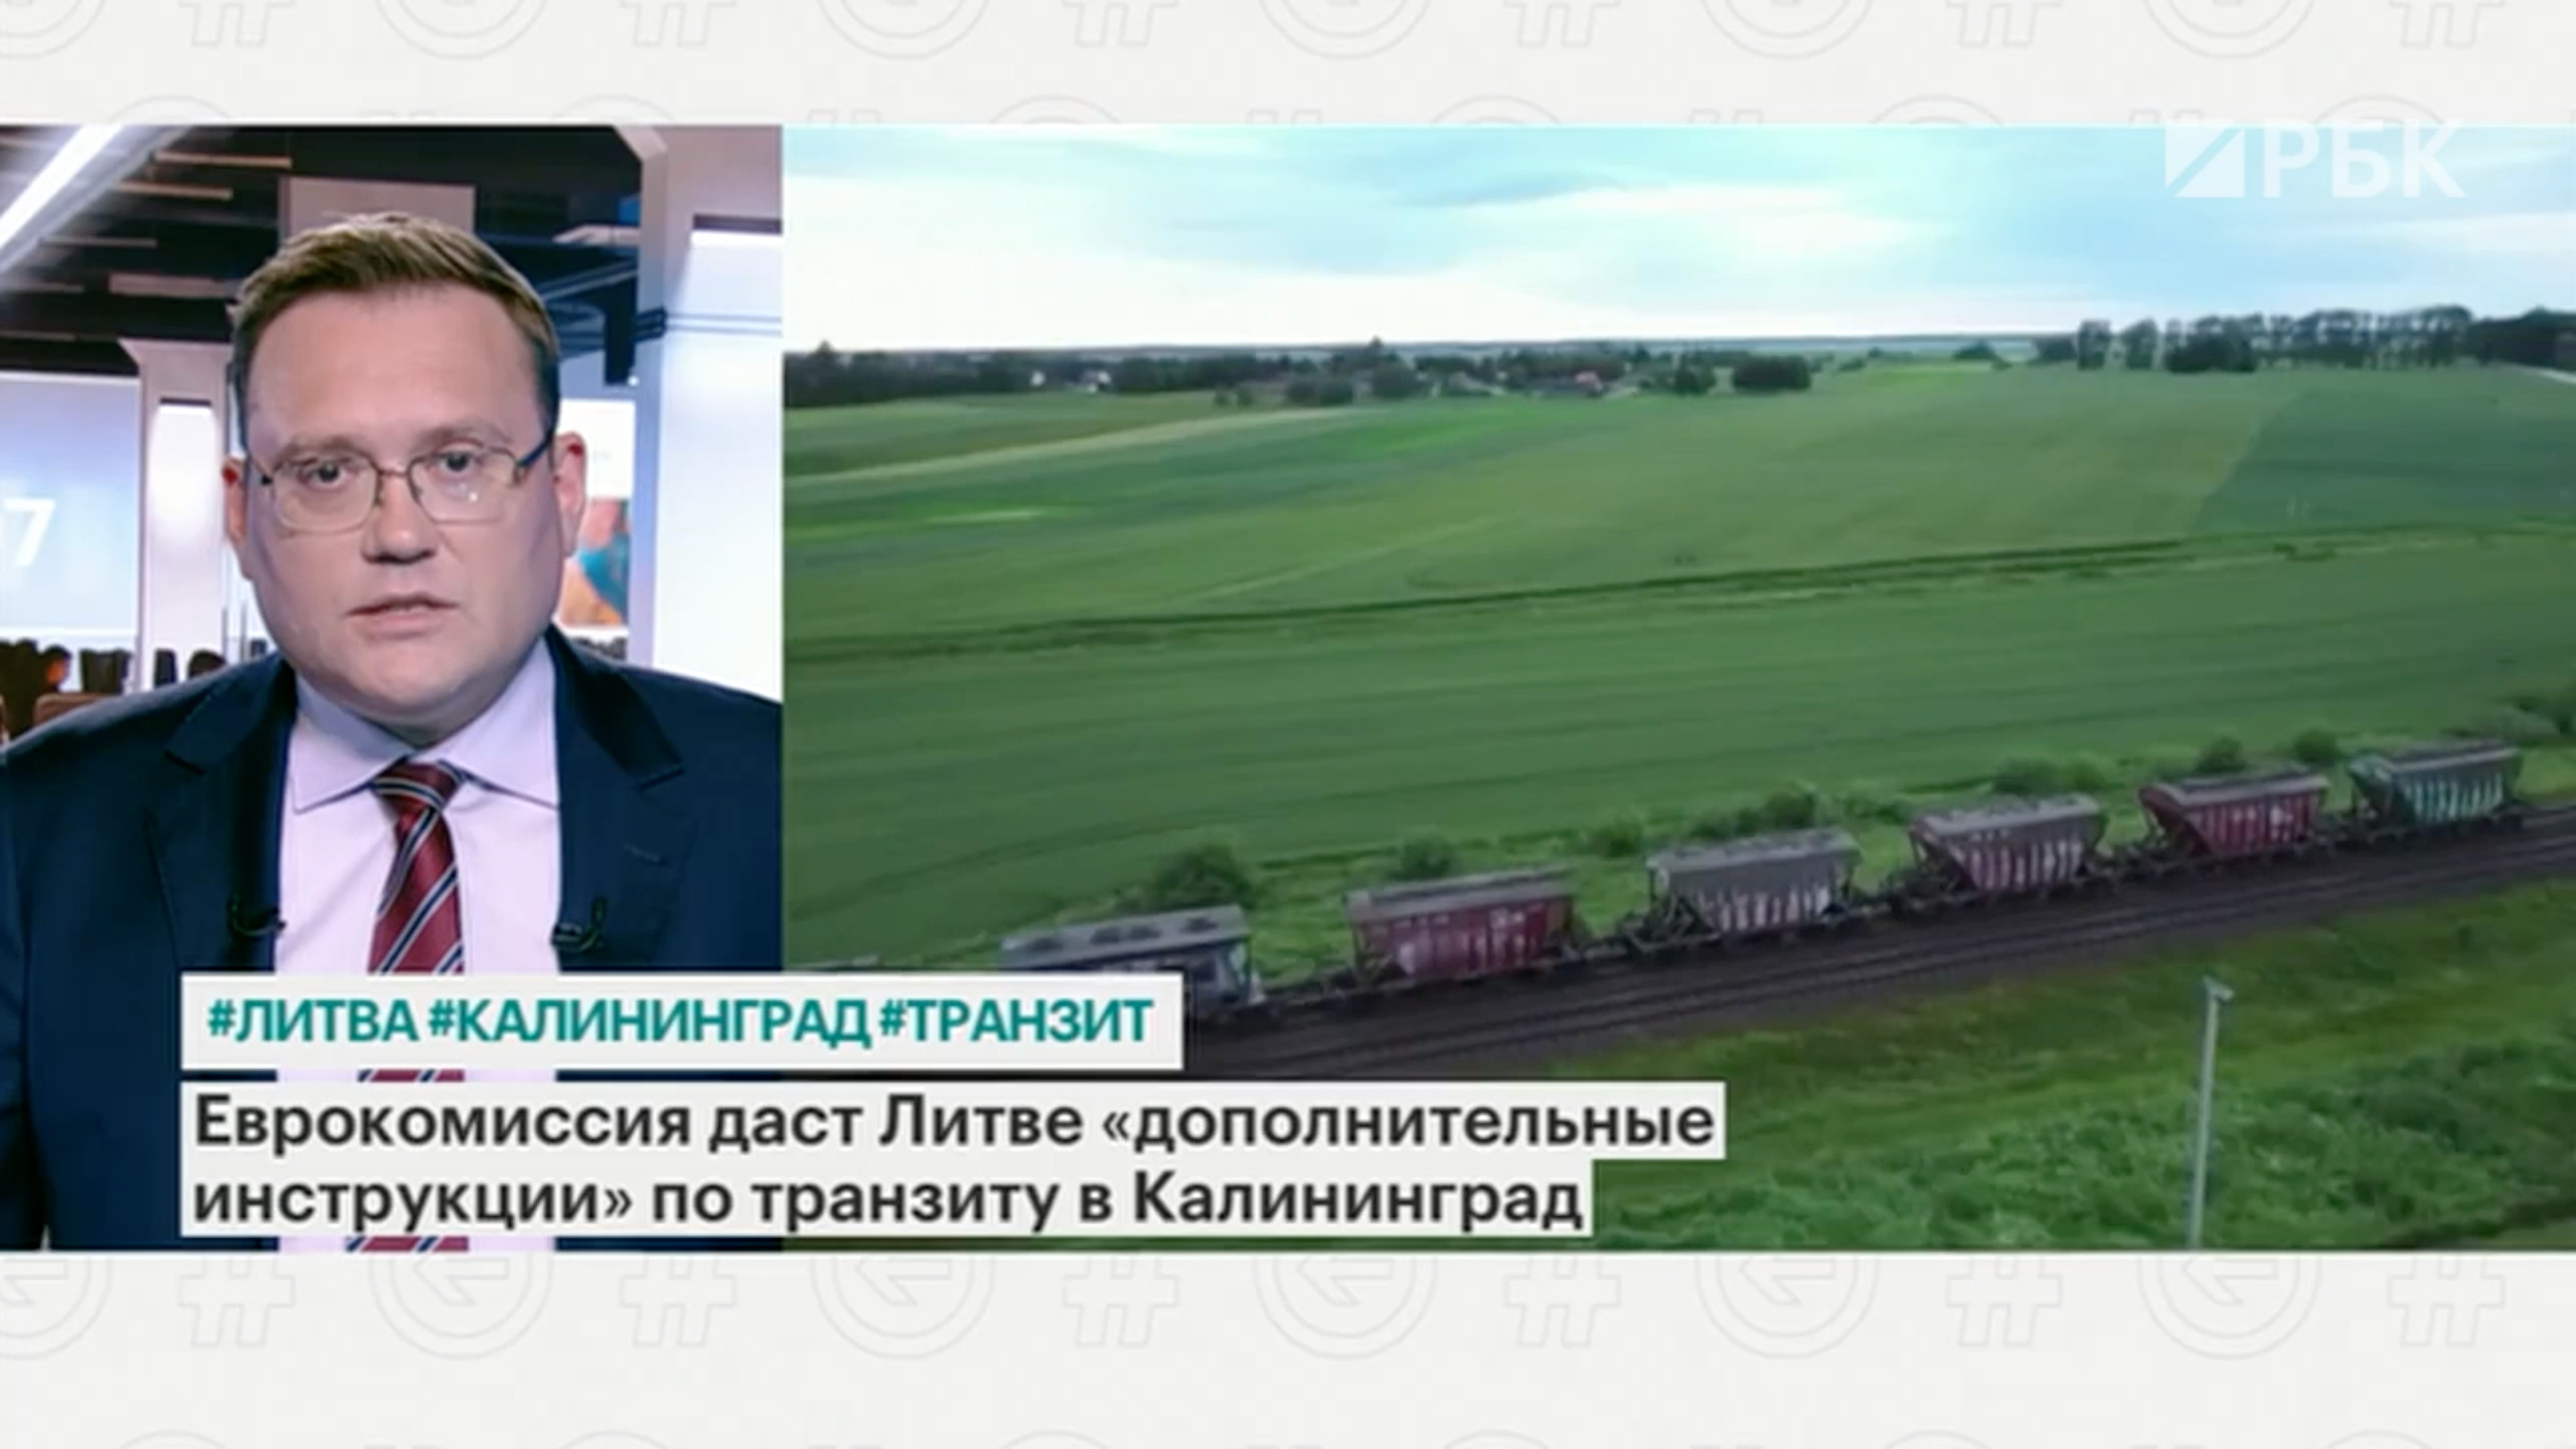 В ЕК анонсировали проверки машин и поездов в Калининград из-за санкций